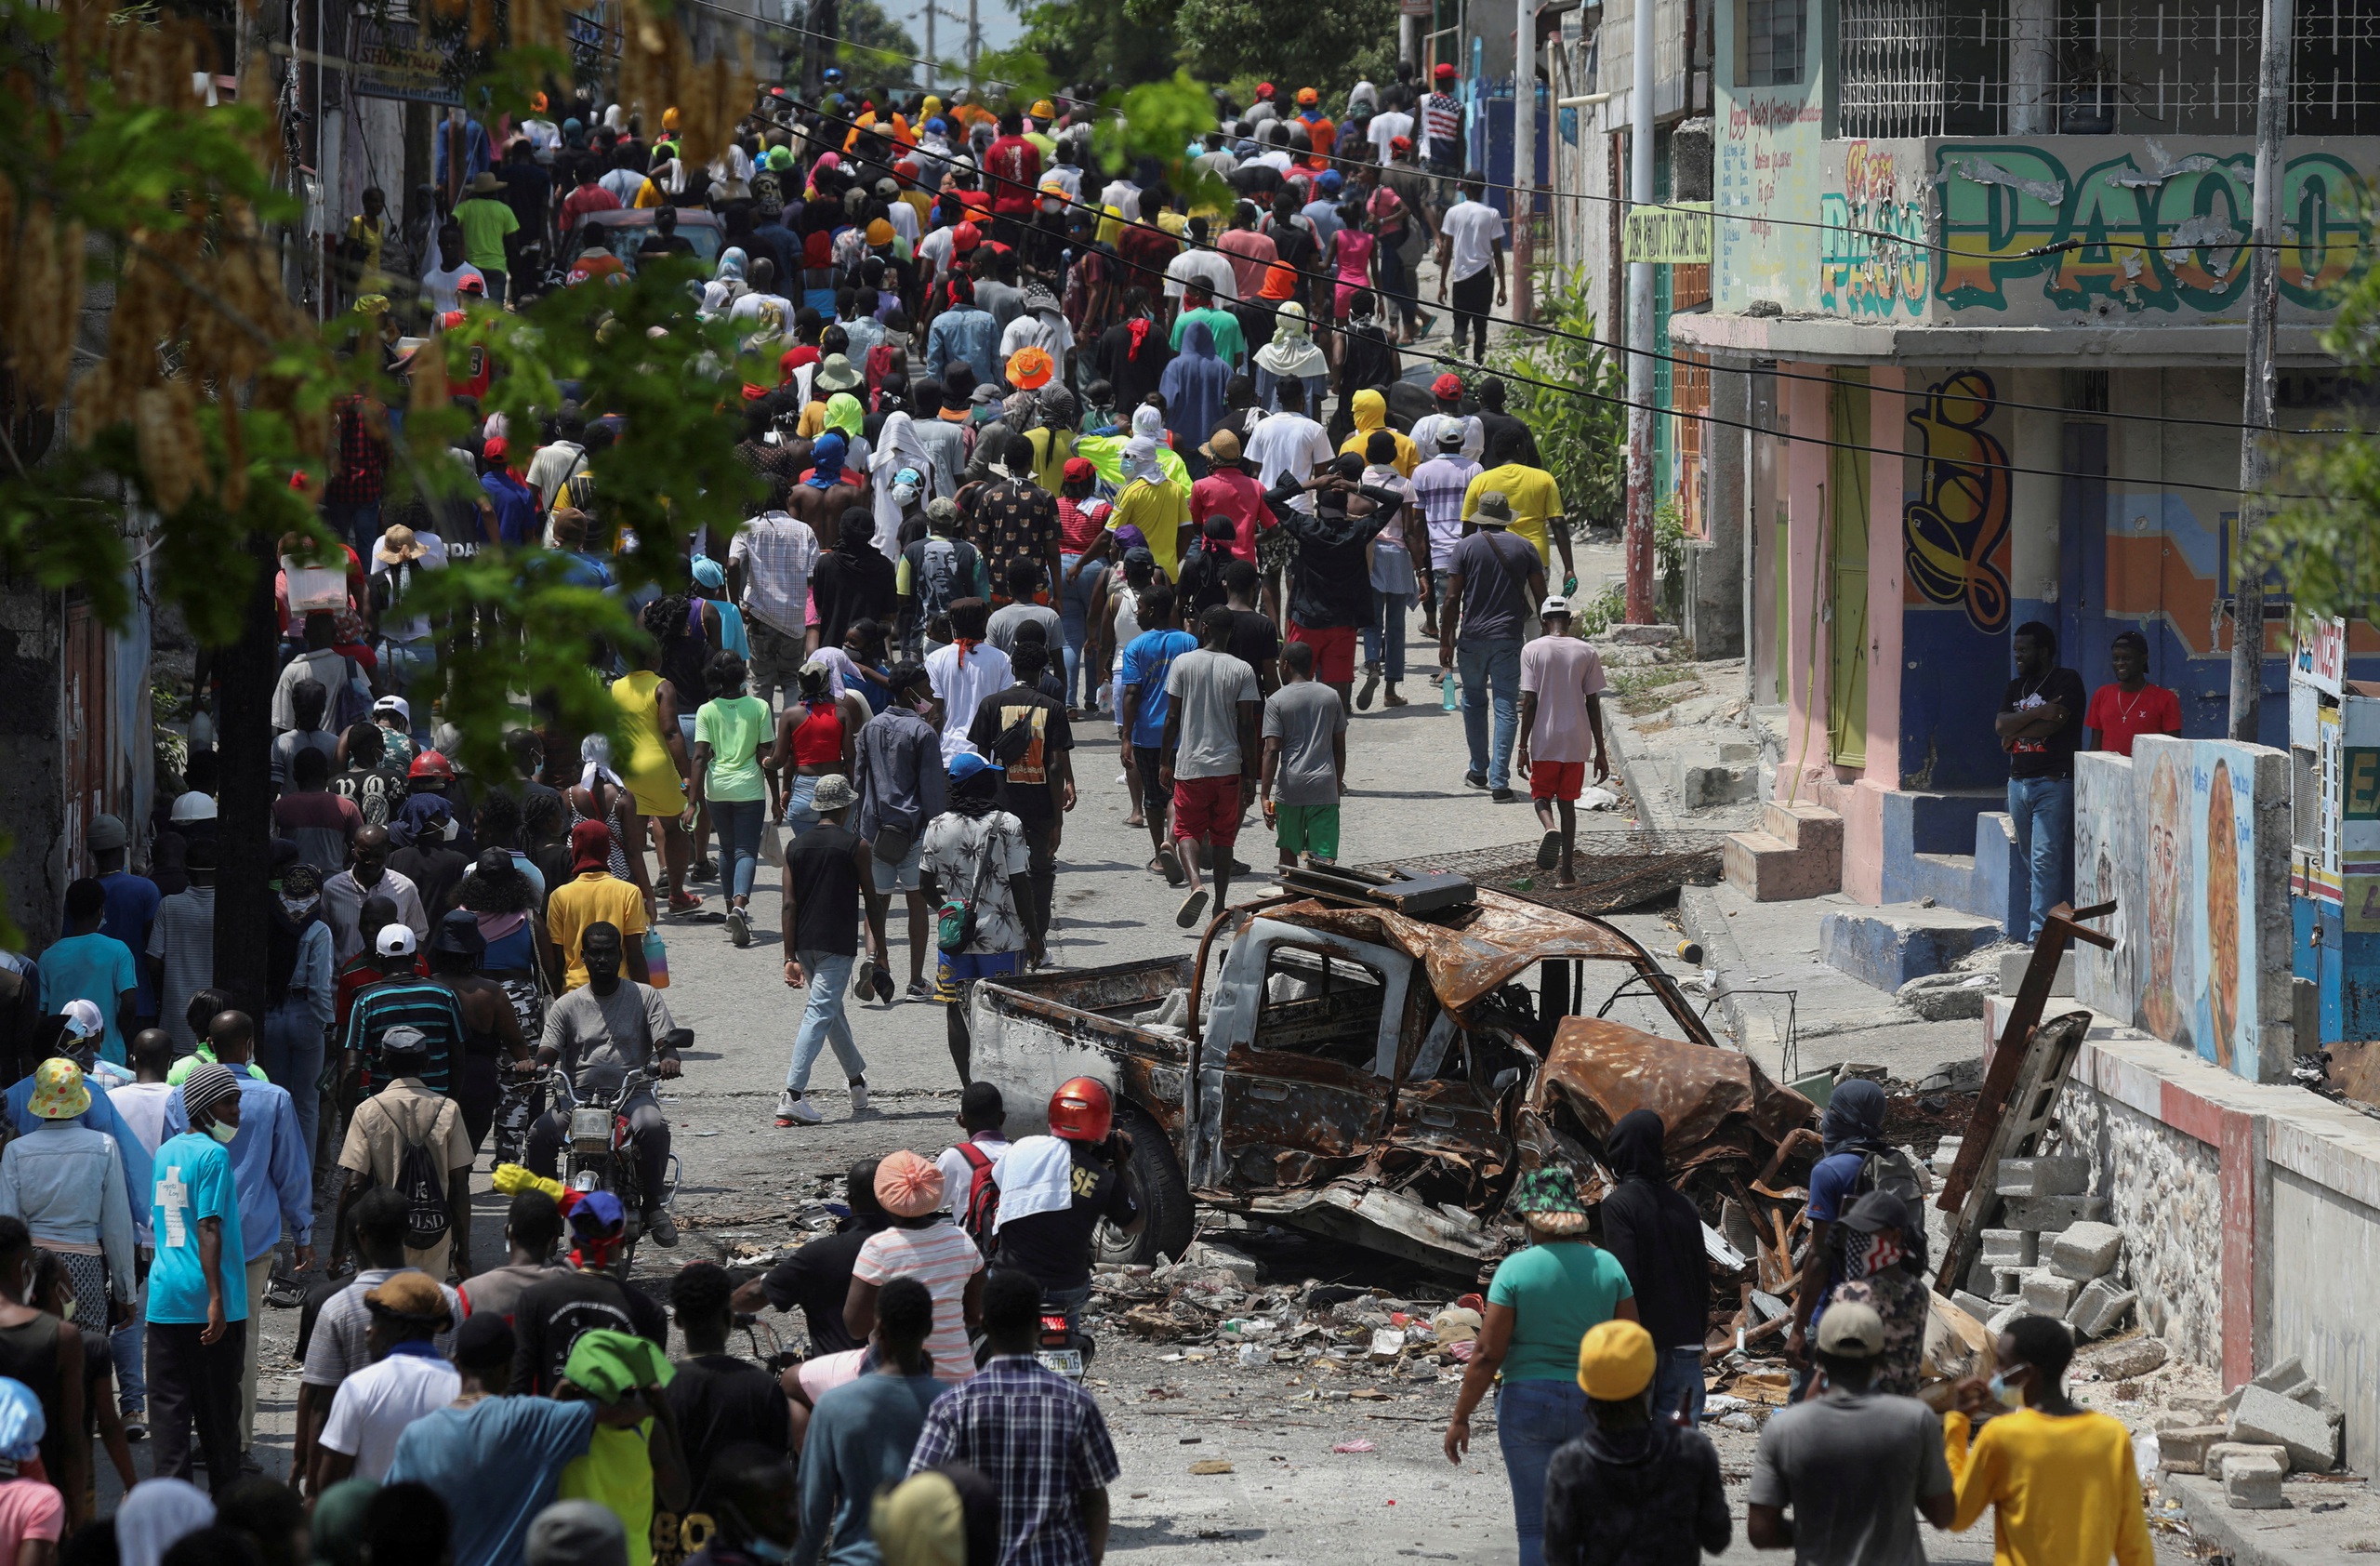 Băng nhóm tội phạm nổi loạn chịu đòn nặng khi chính quyền Haiti mạnh tay trấn áp- Ảnh 1.